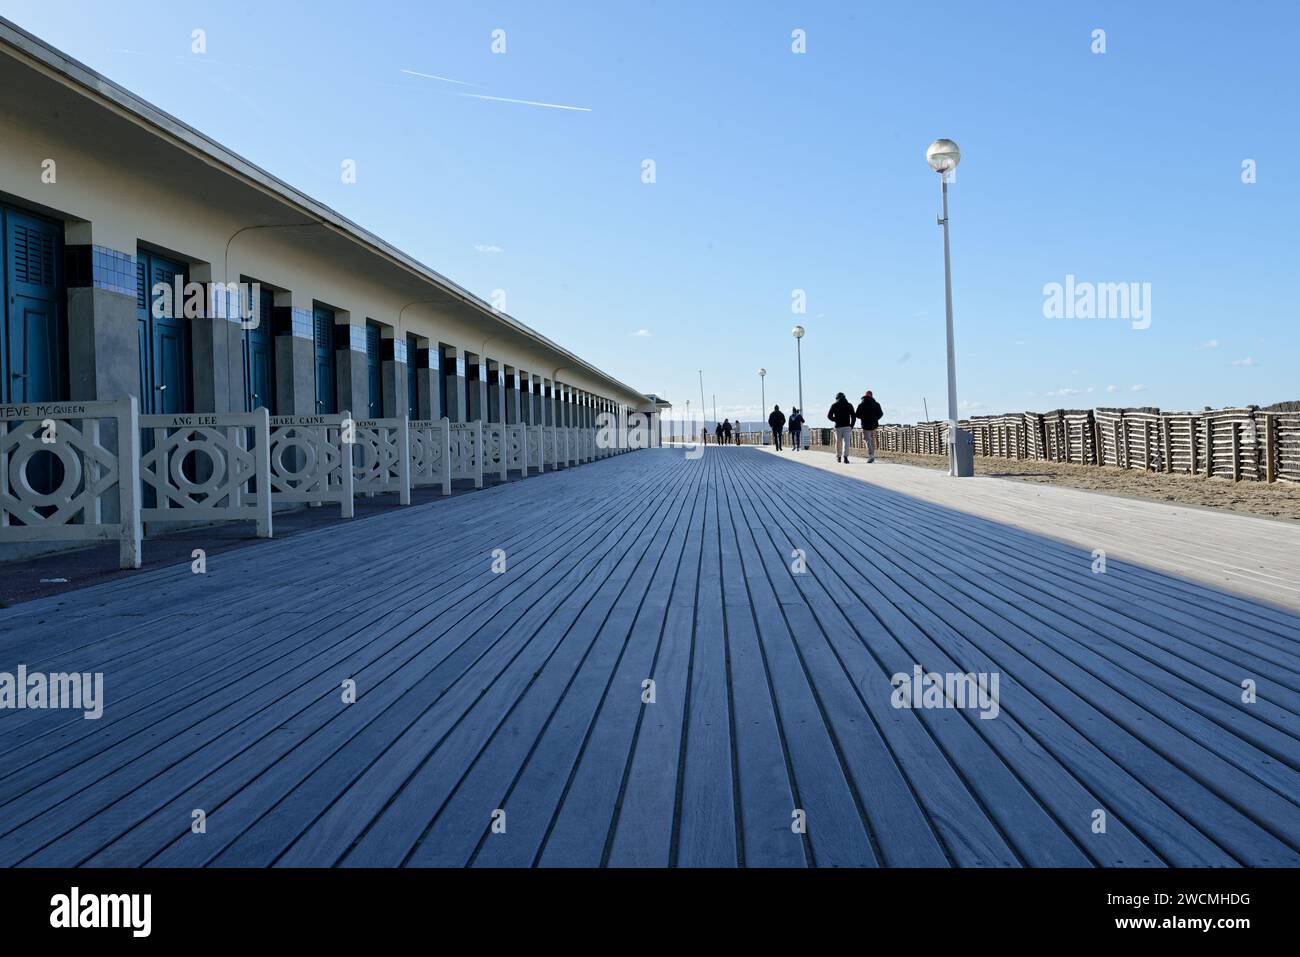 Deauville la station balnéaire francaise de luxe est située en Normandie dans le département du calvados. EN hiver Son Port et sa plage sont paisibles Foto Stock